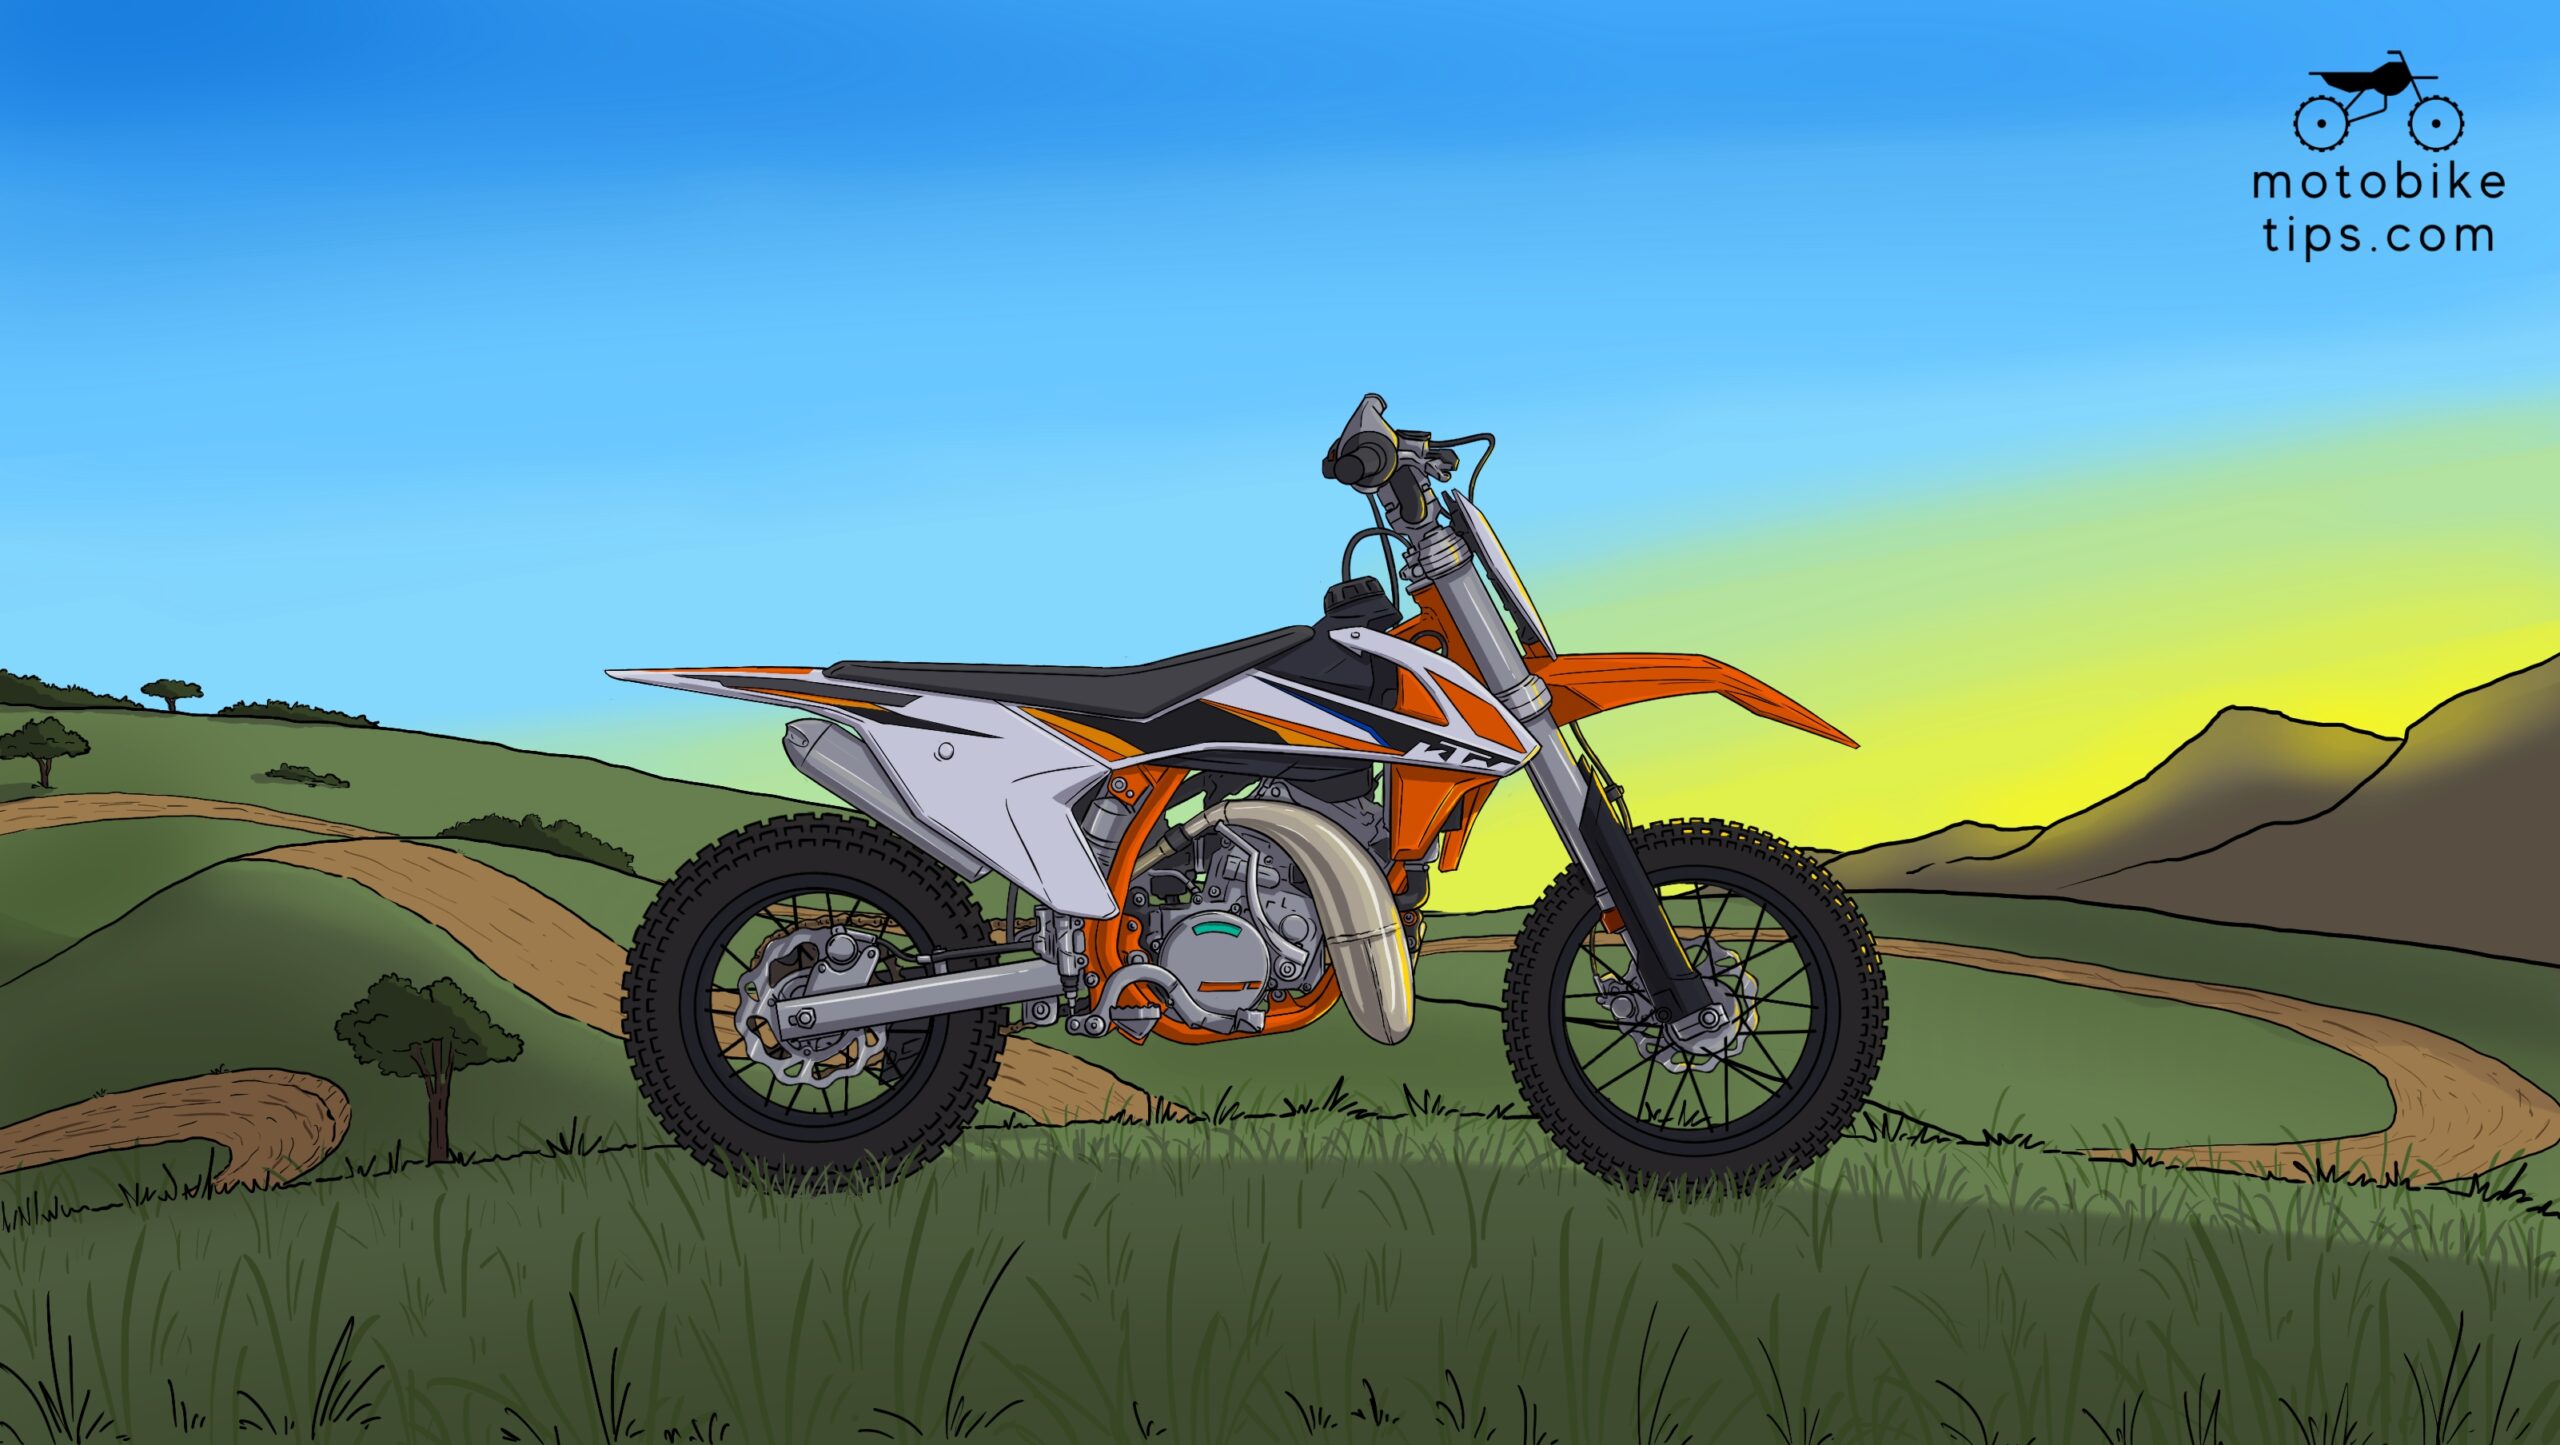 8 Cool Dirt Bike Wallpaper - Download Free Custom Images - motobiketips